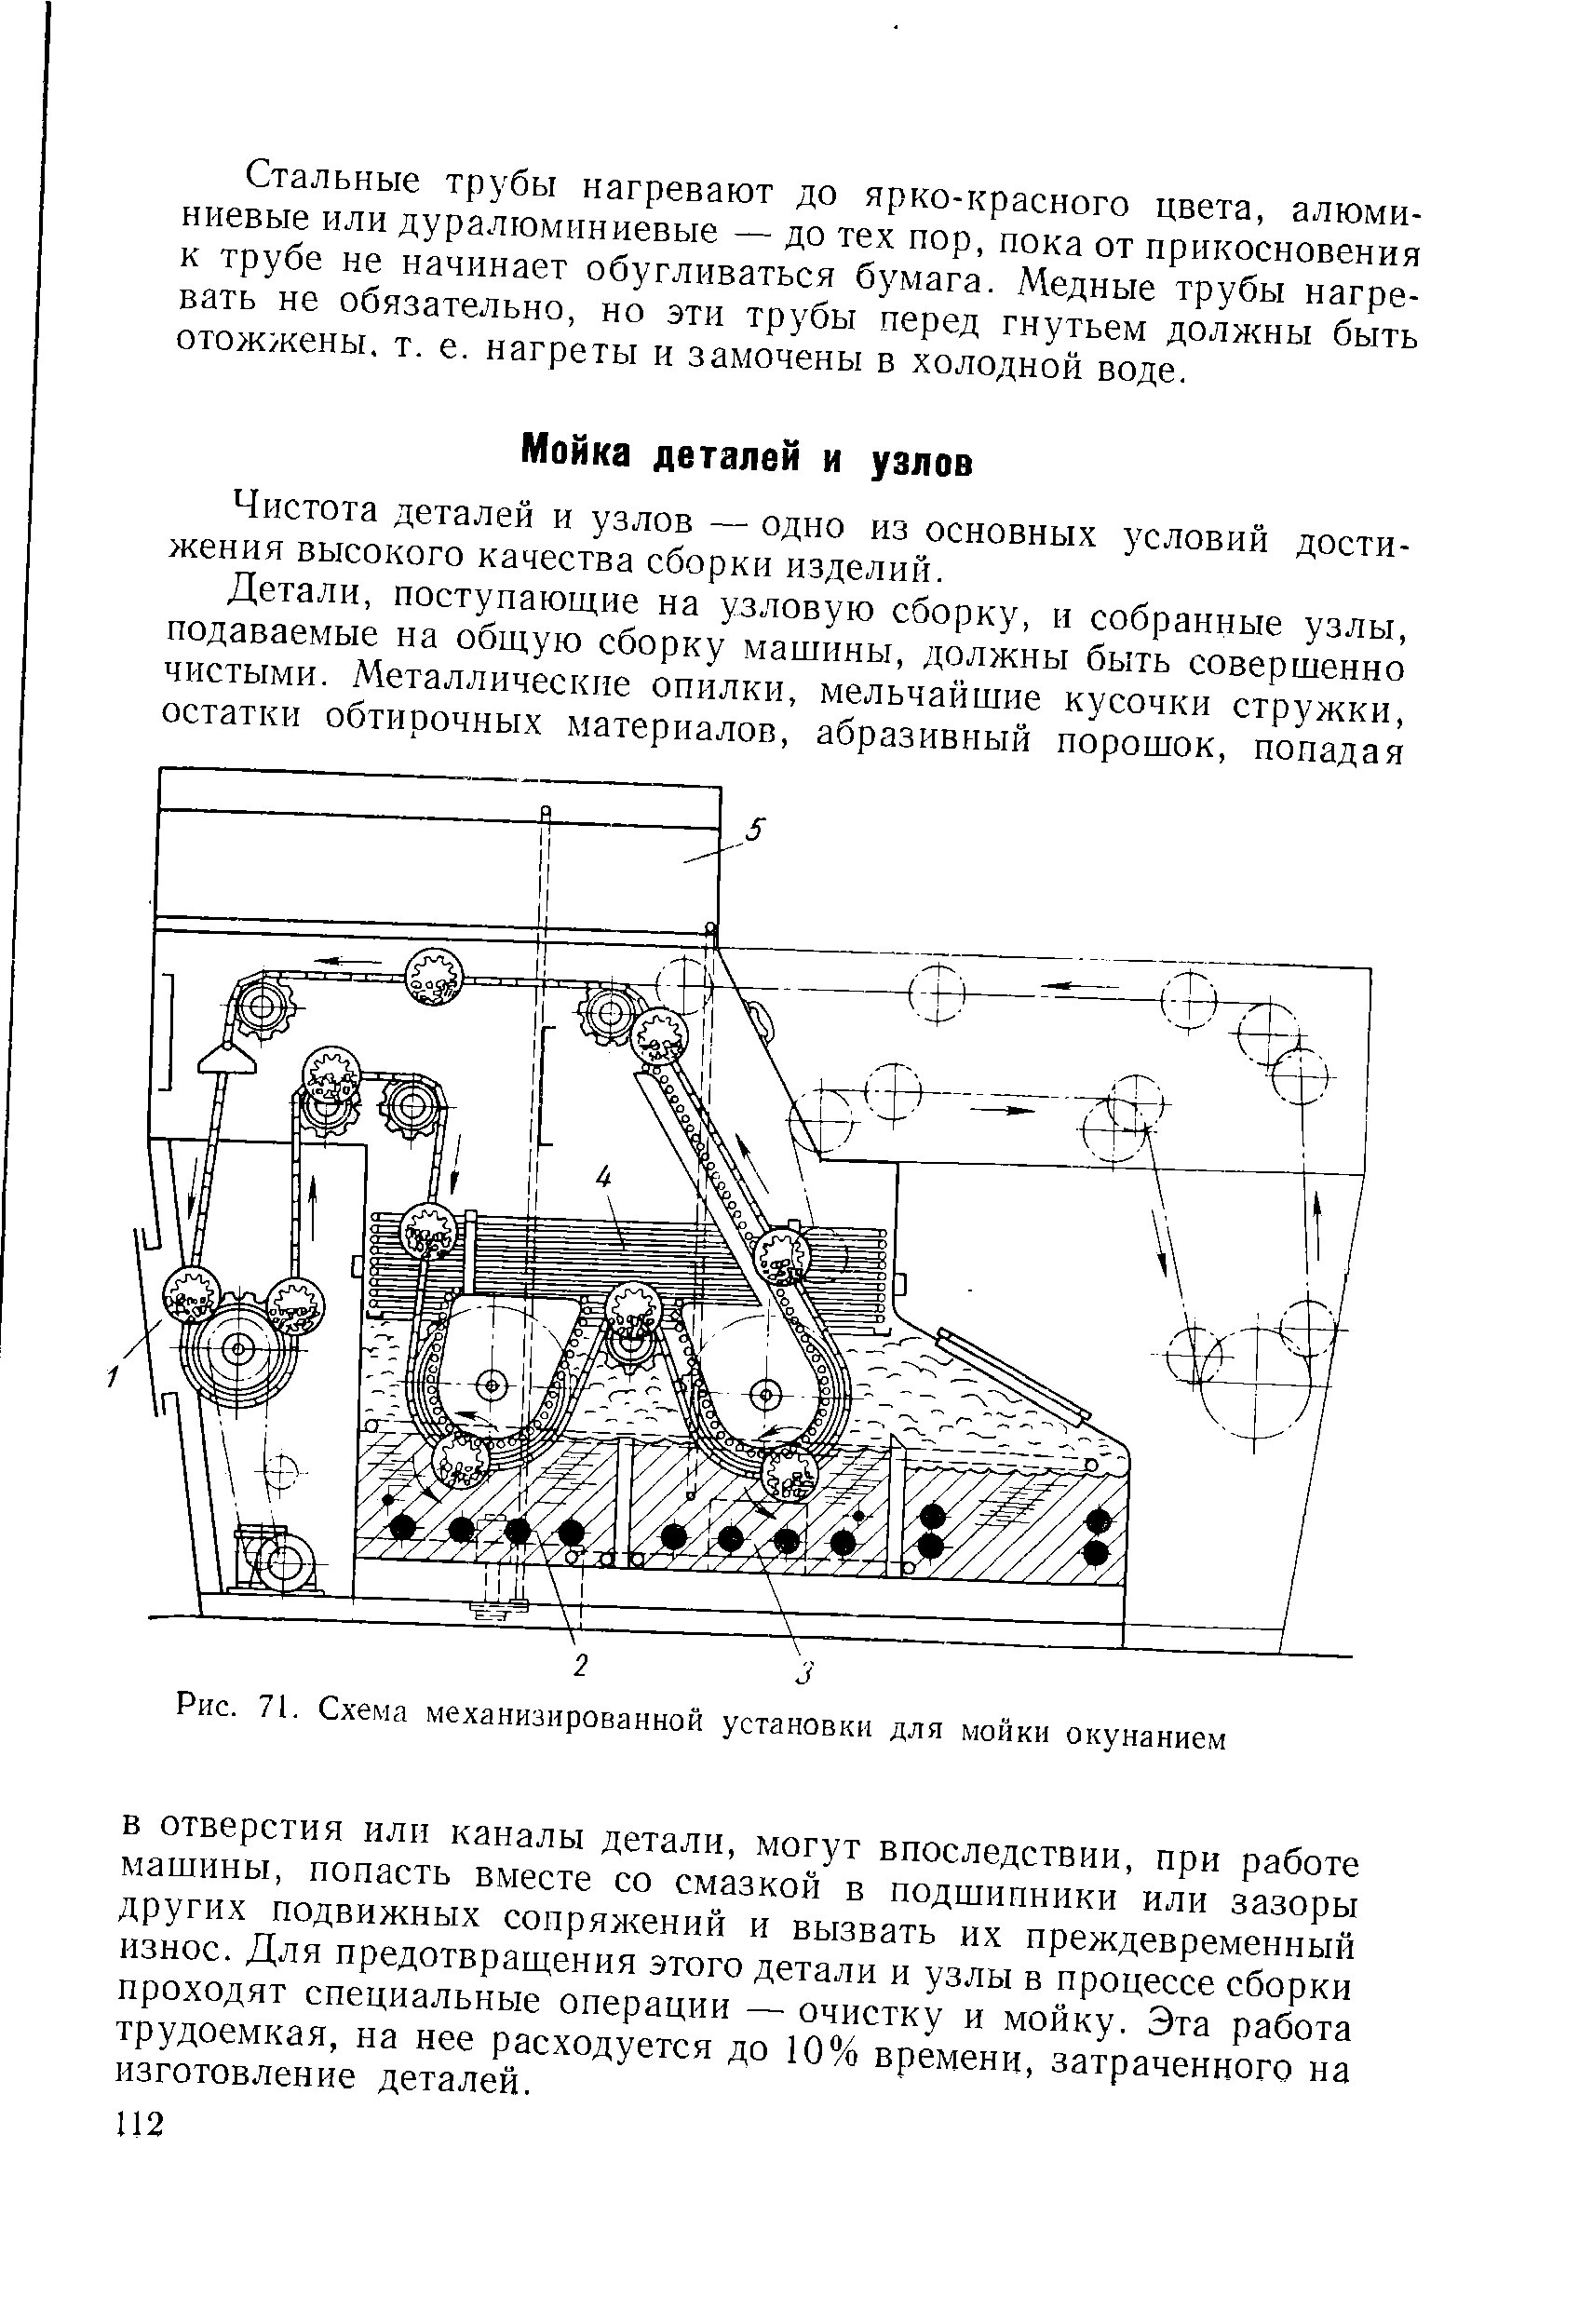 Рис. 71. Схема механизированной установки для мойкн окунанием
